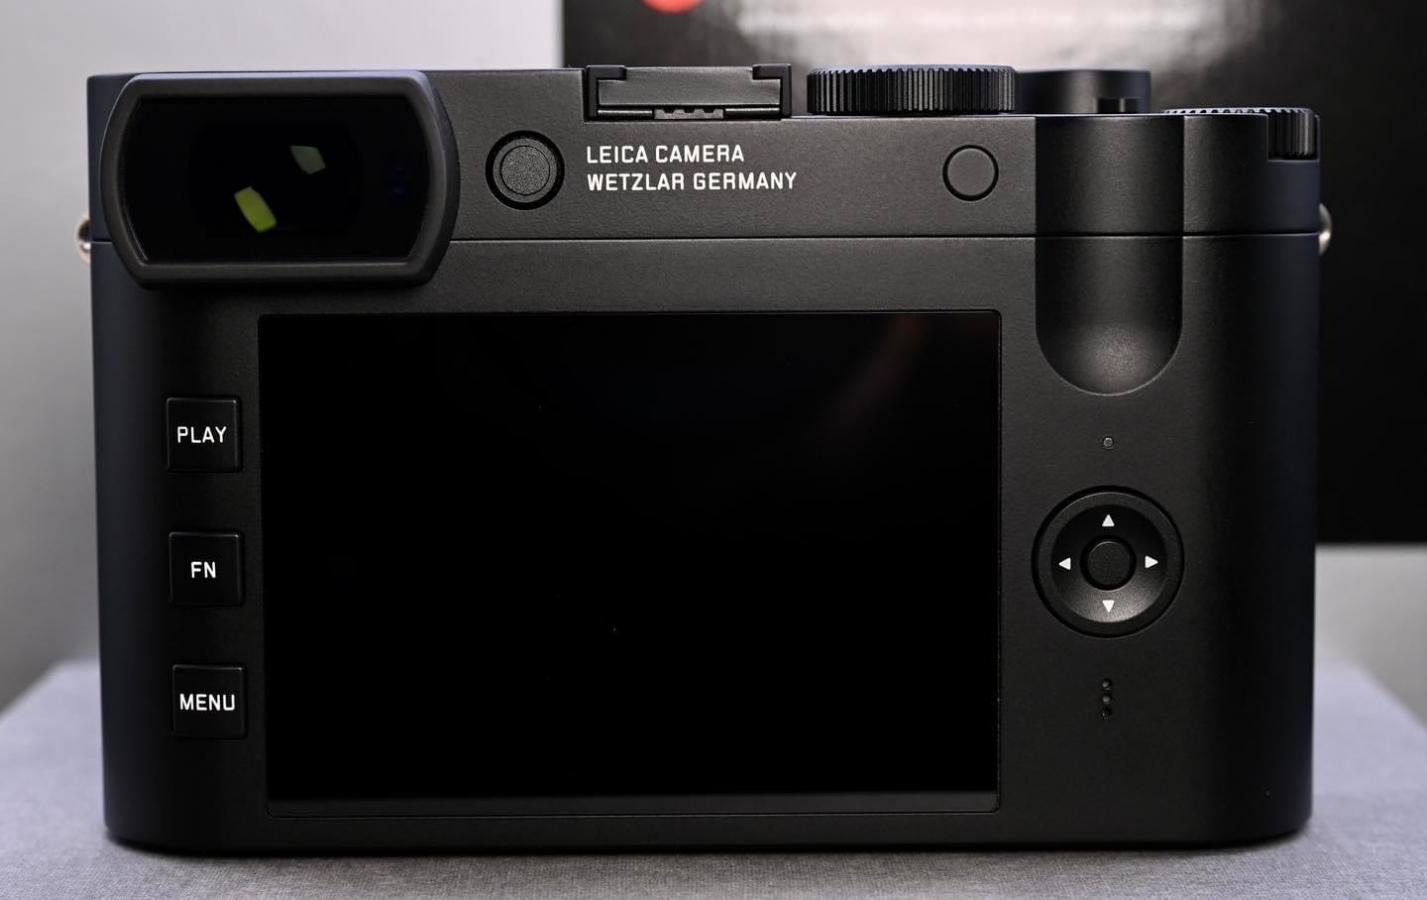 Leica Q2 monochrome 